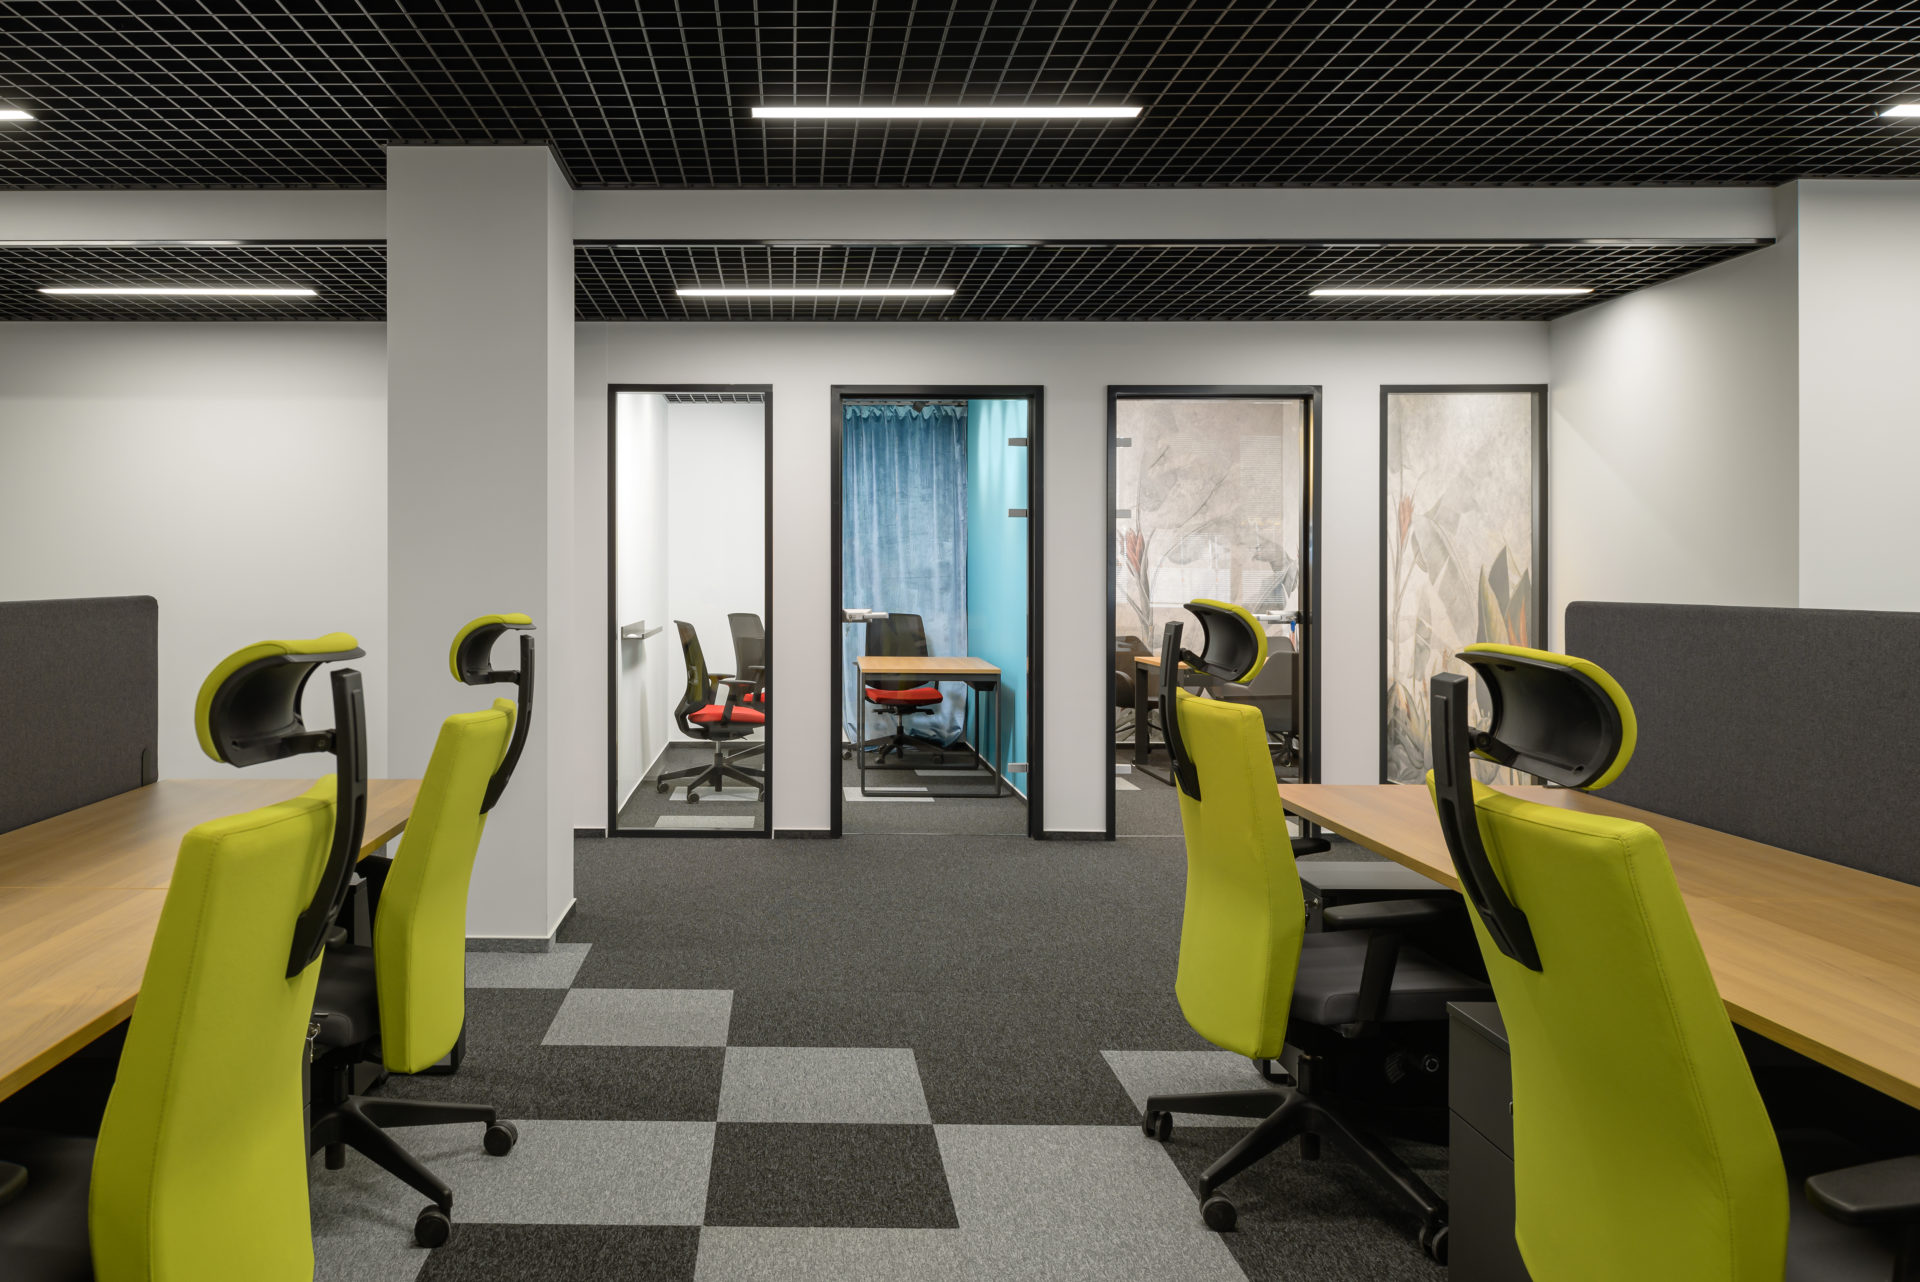 Projekt przestrzeni biurowych z przestrzenią open space oraz wydzielonymi niewielkimi przestrzeniami pracy indywidualnej.